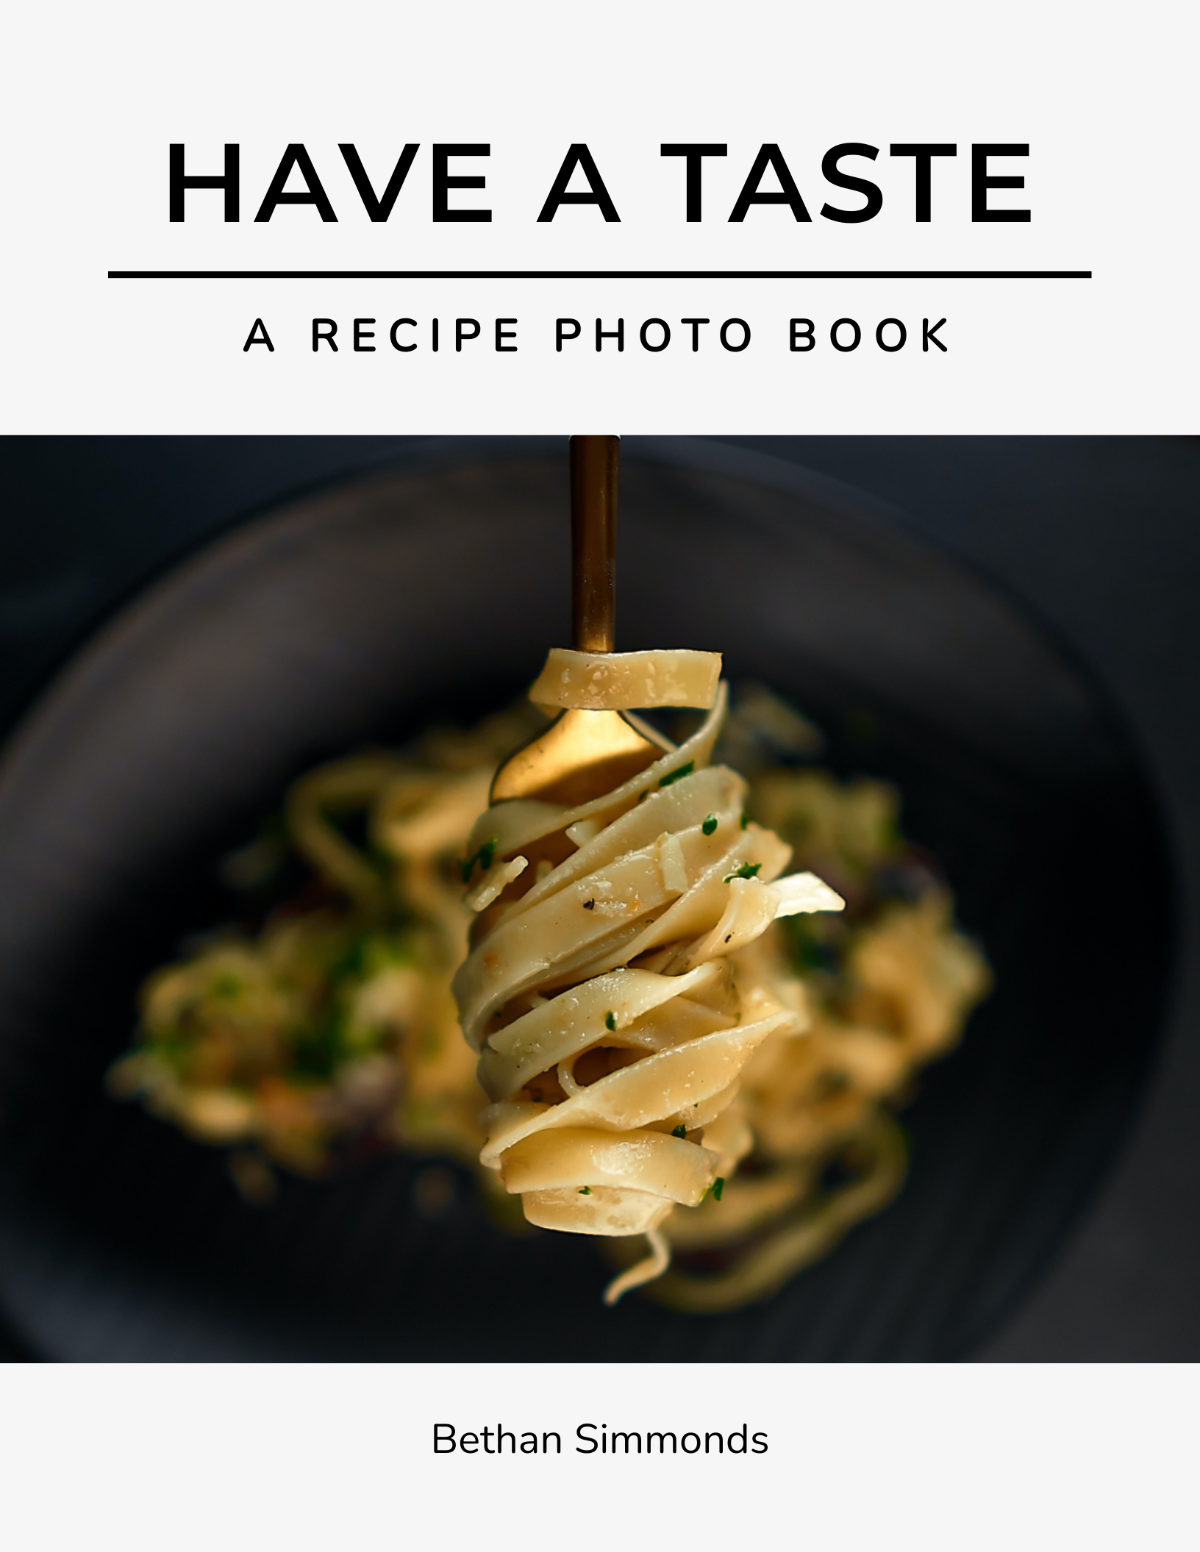 Recipe Photo Book Template